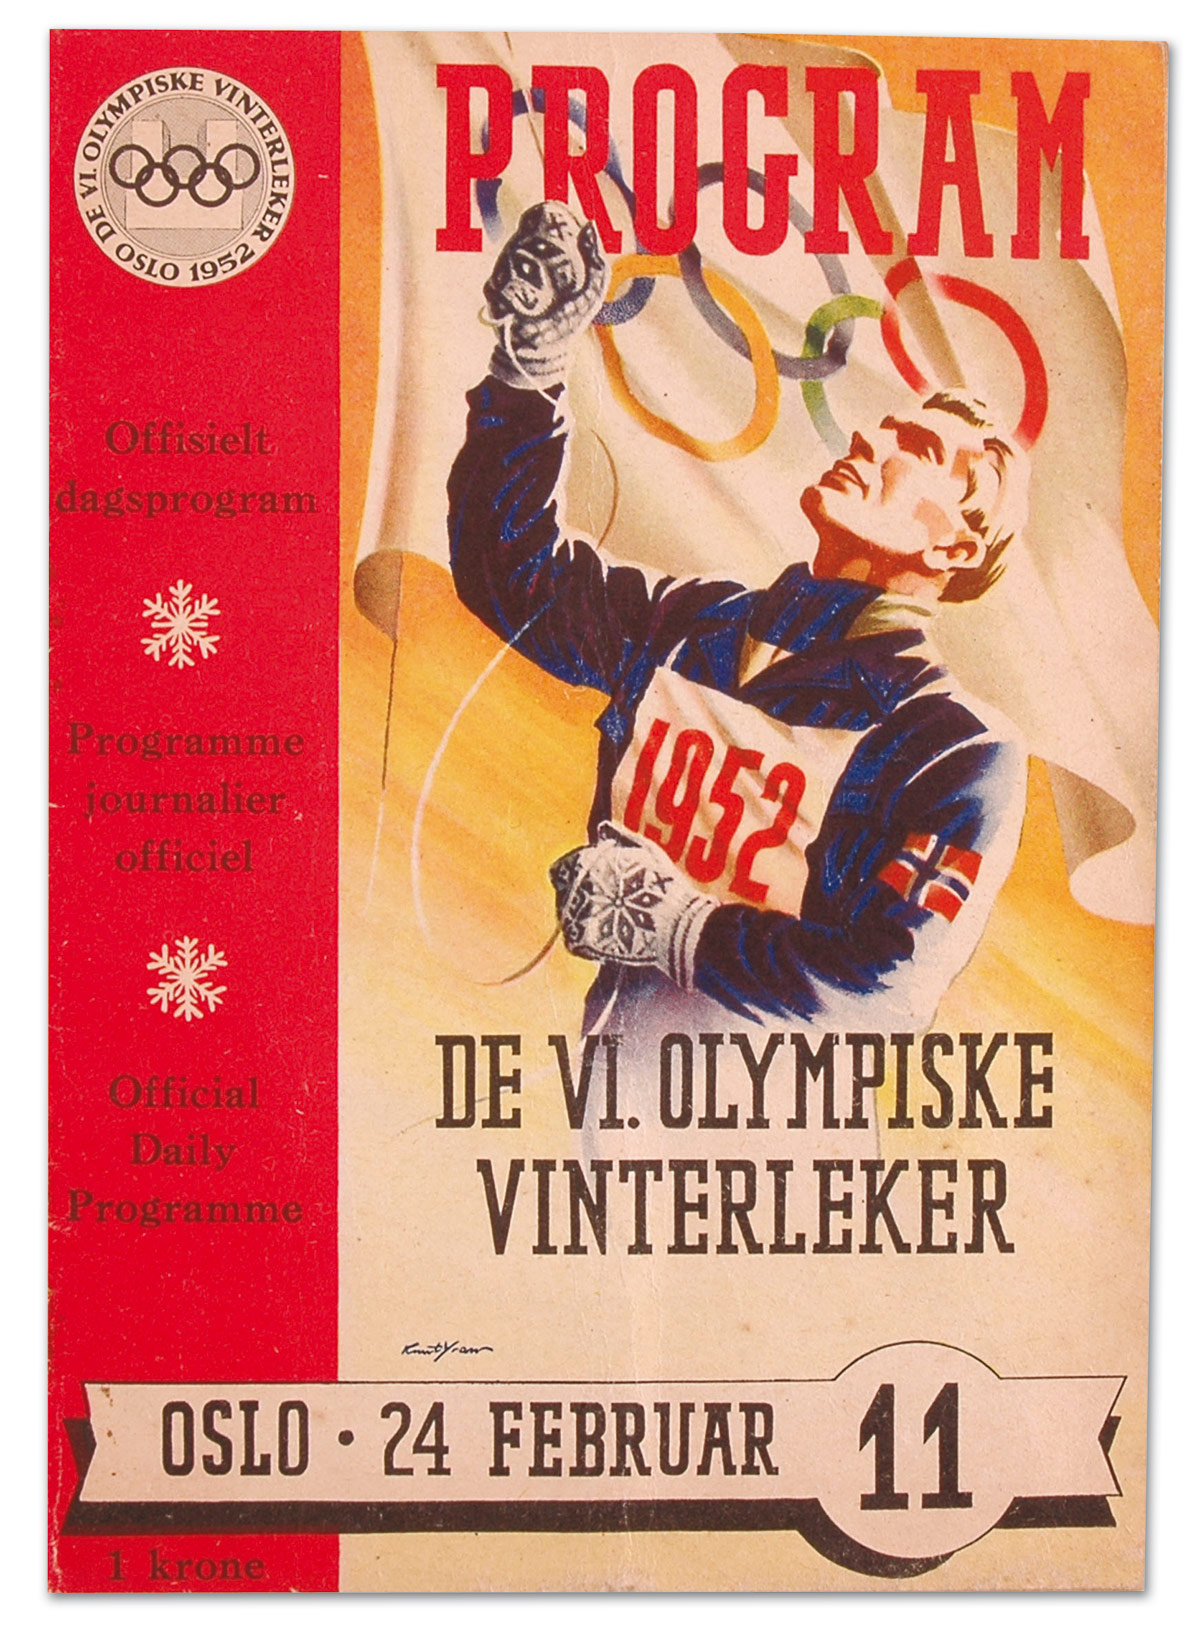 Ice hockey at the 1960 Winter Olympics - Wikipedia